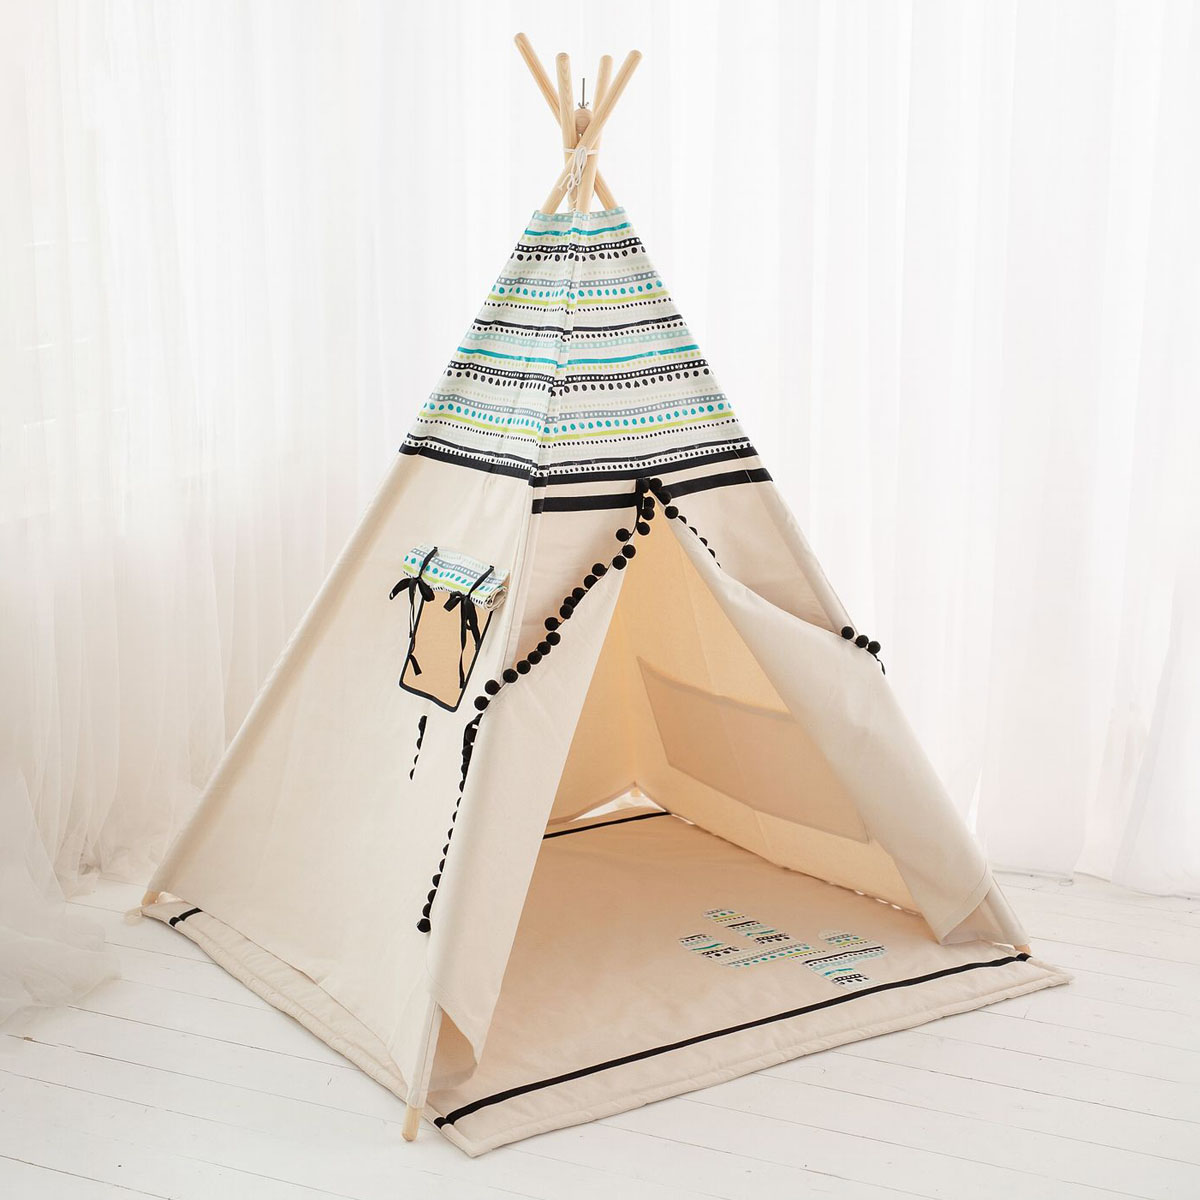 150 cm hoch für Jungen Indianer Abenteuerzelt cozydots Indianer Spielzelt Tipi Zelt für Kinder Spielzelt im Alter von 0-7 Jahren Light Blue 